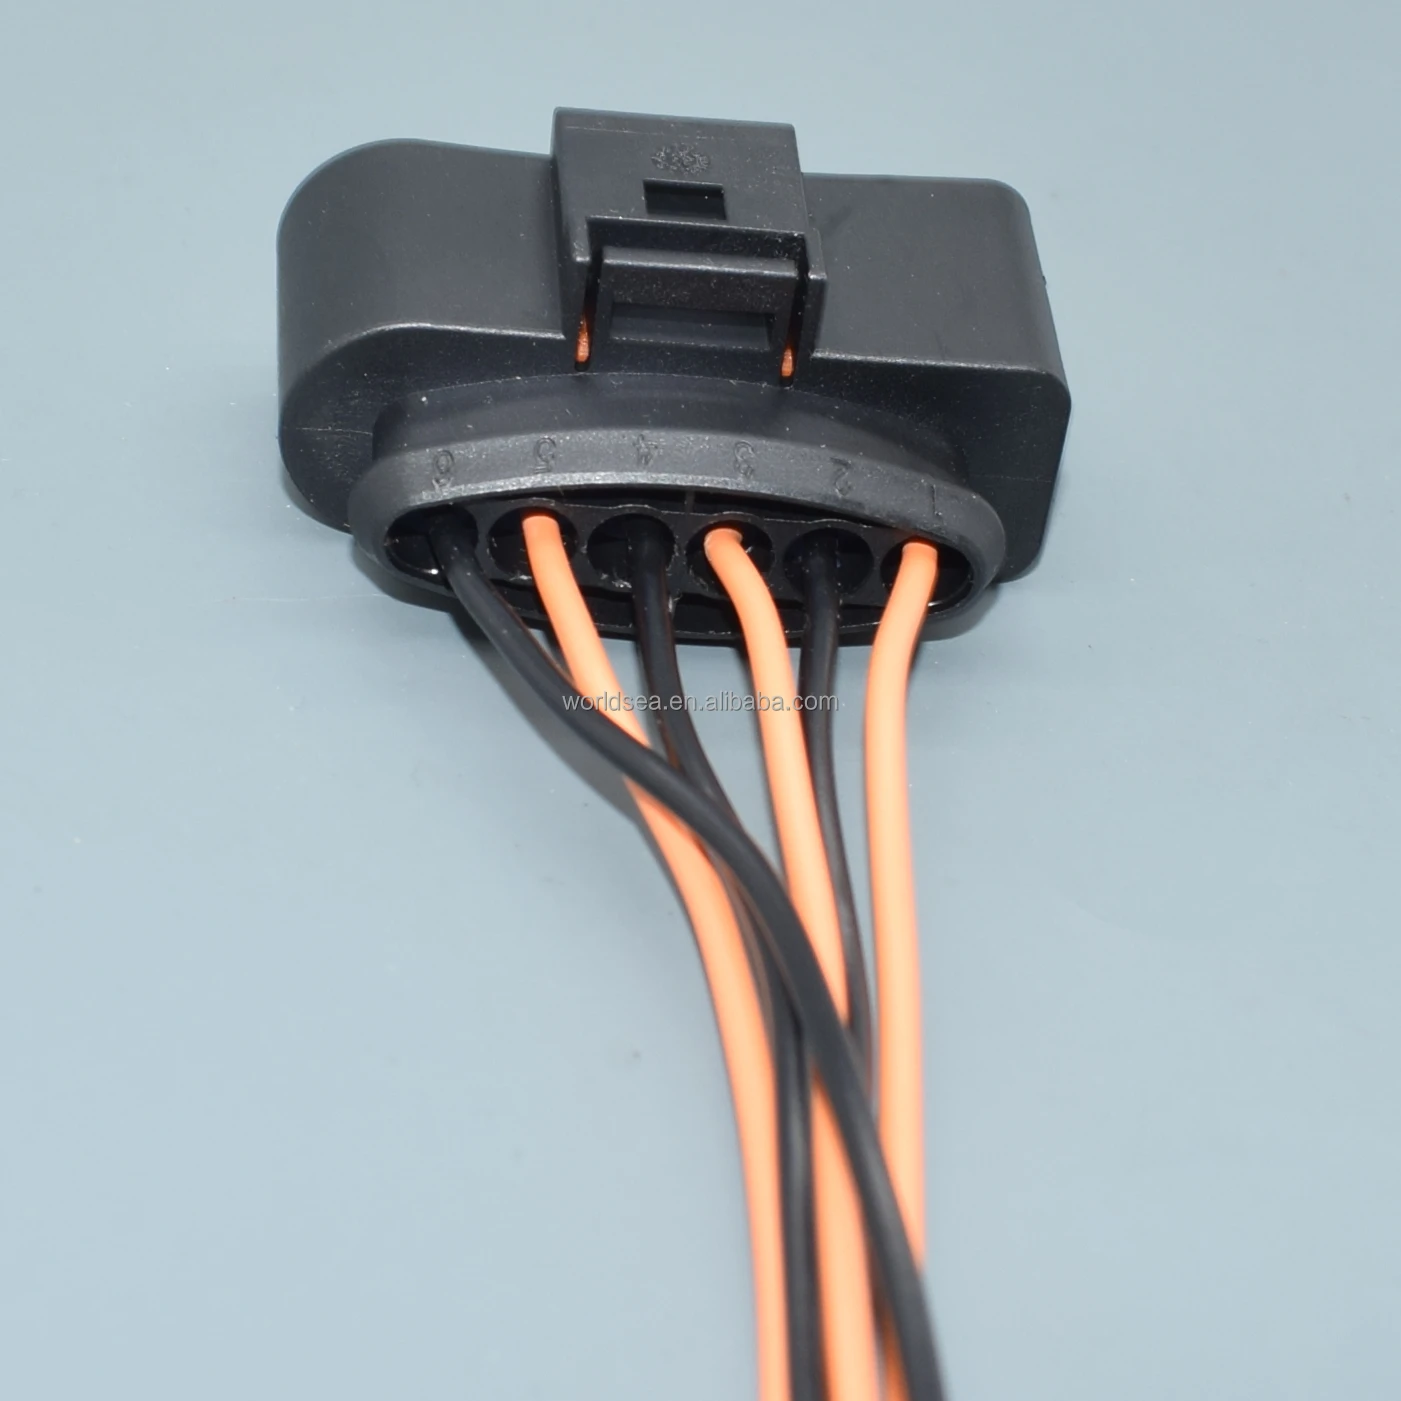 Shhworldsea-connecteur électrique étanche de voiture, 1 2 3 4 5, 6